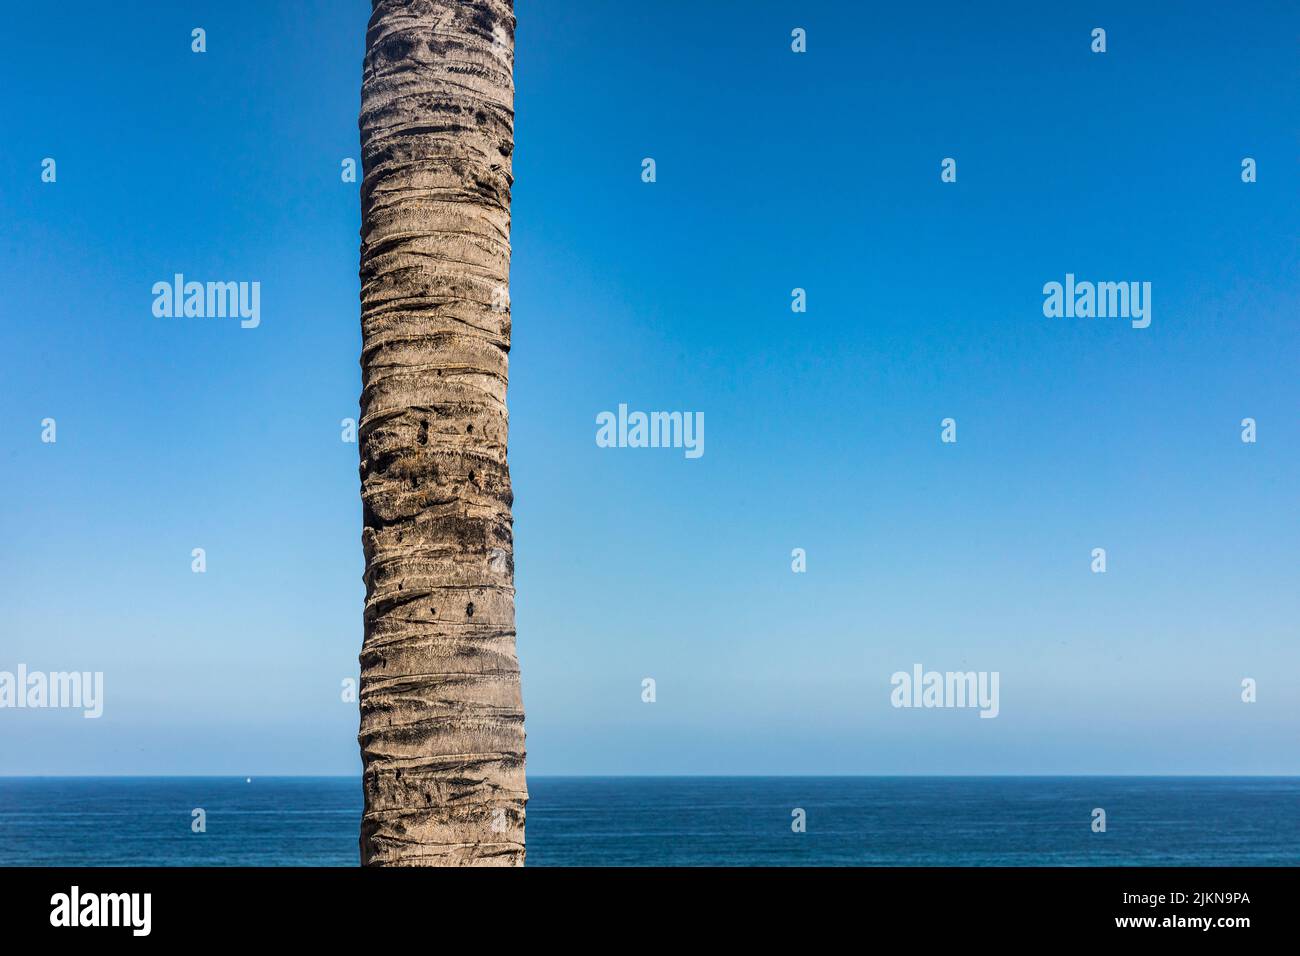 Una palmera, tronco de árbol, océano pacífico y cielo azul. Foto de stock